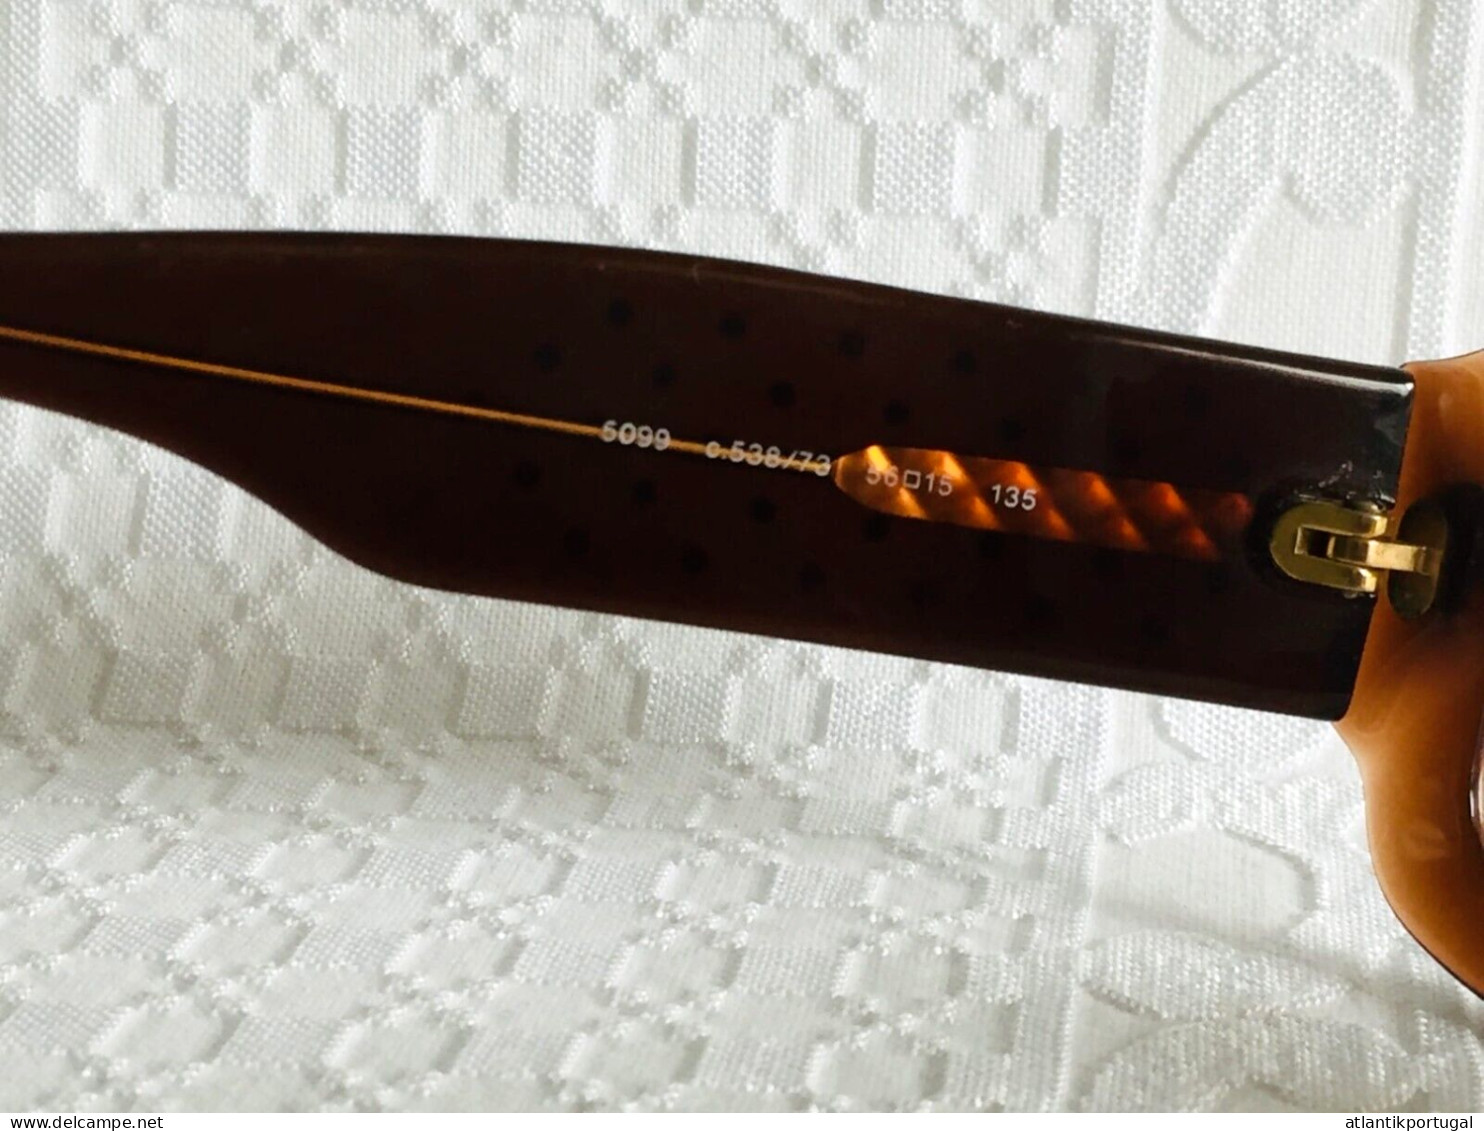 CHANEL 5099 c. 538/73 Brille Sonnenbrille Frame Brillengestell